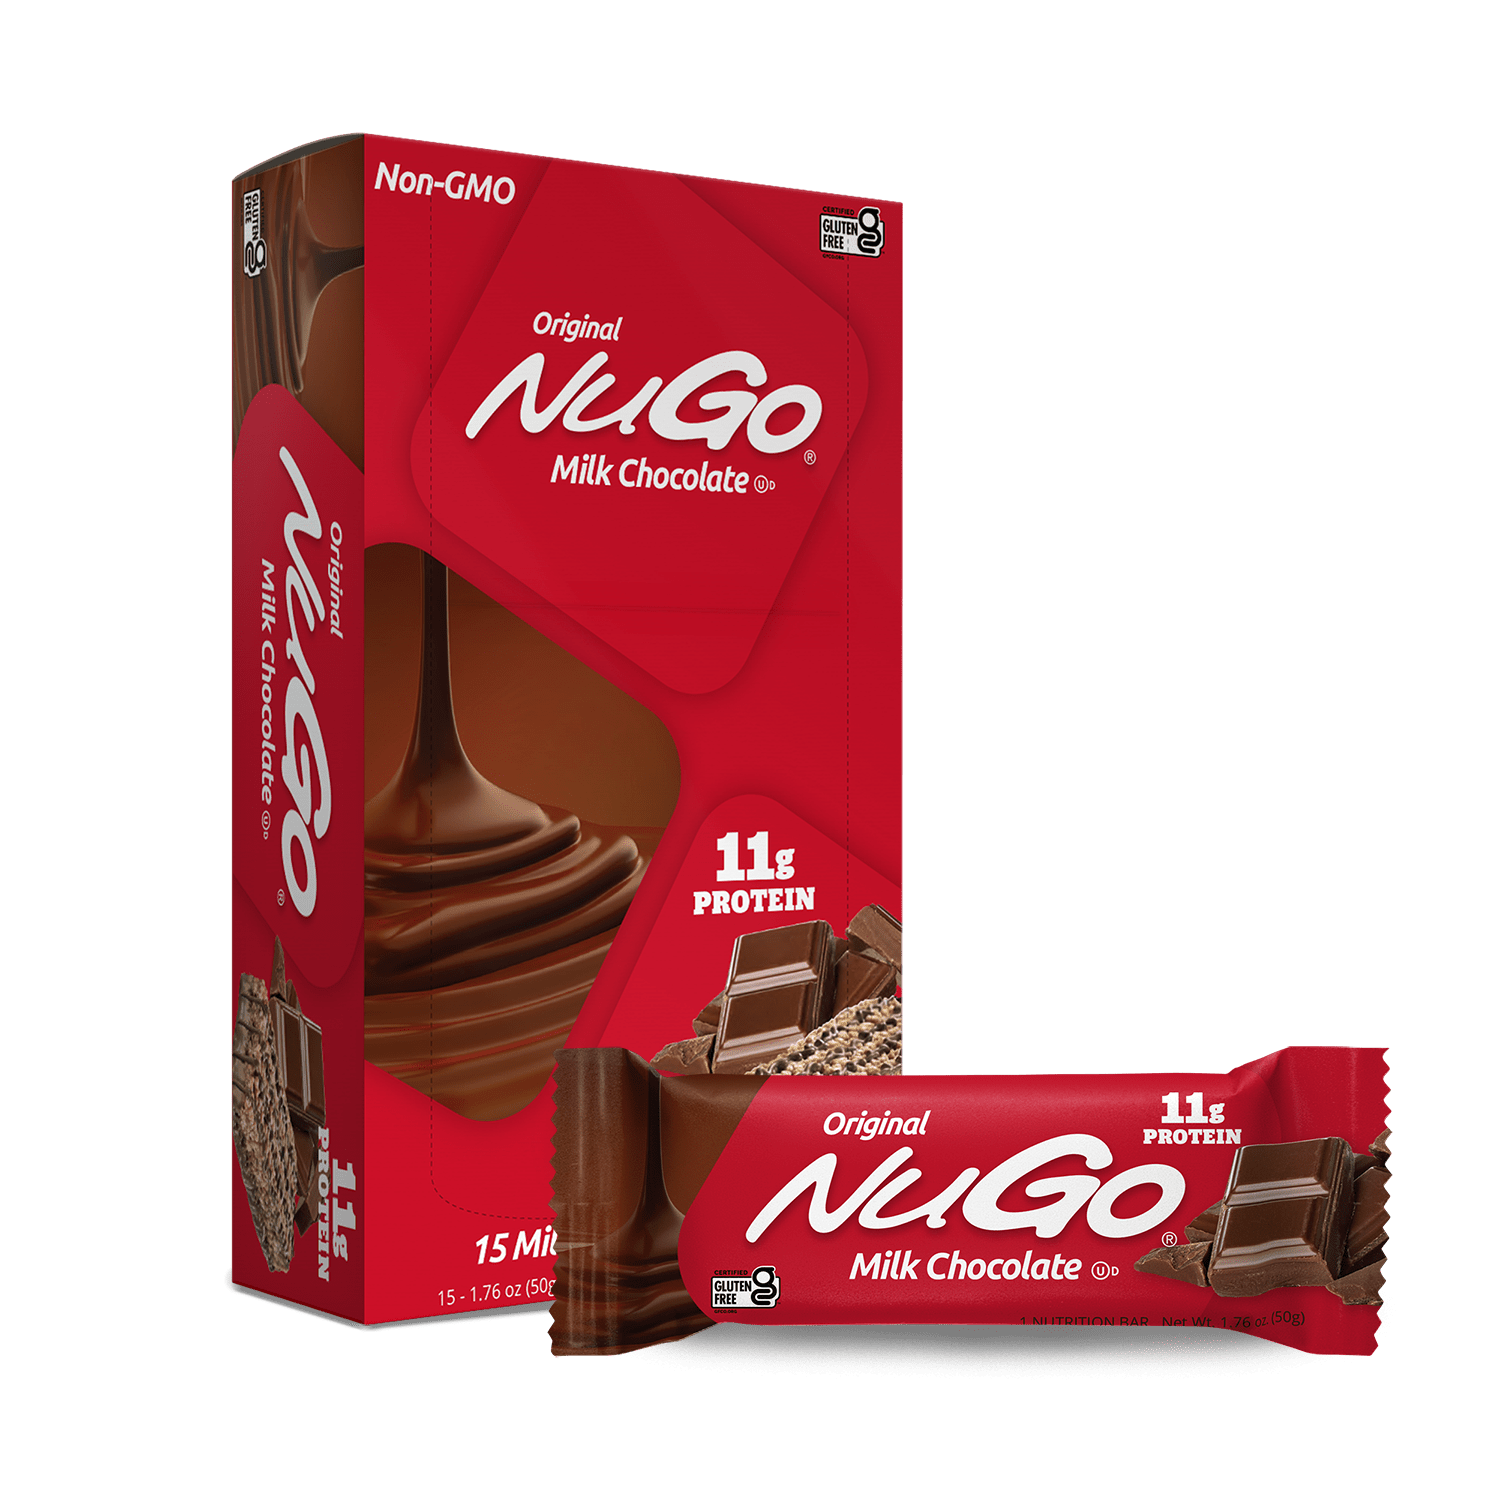 NuGo Original Milk Chocolate Bar and Box